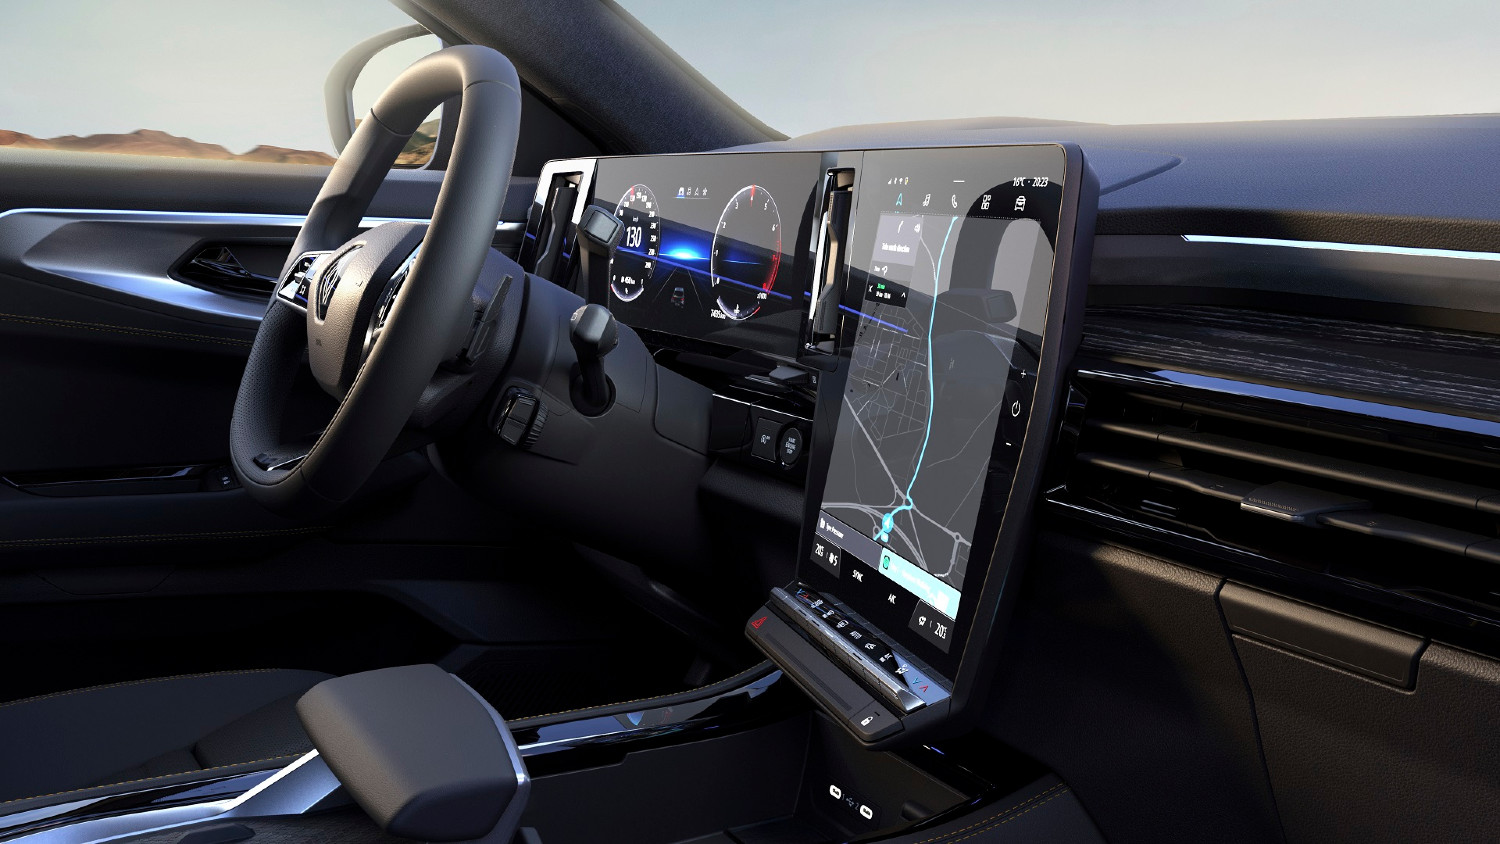 O generoso ecrã OpenR é um dos elementos de destaque no interior do Renault Austral agora desvendado